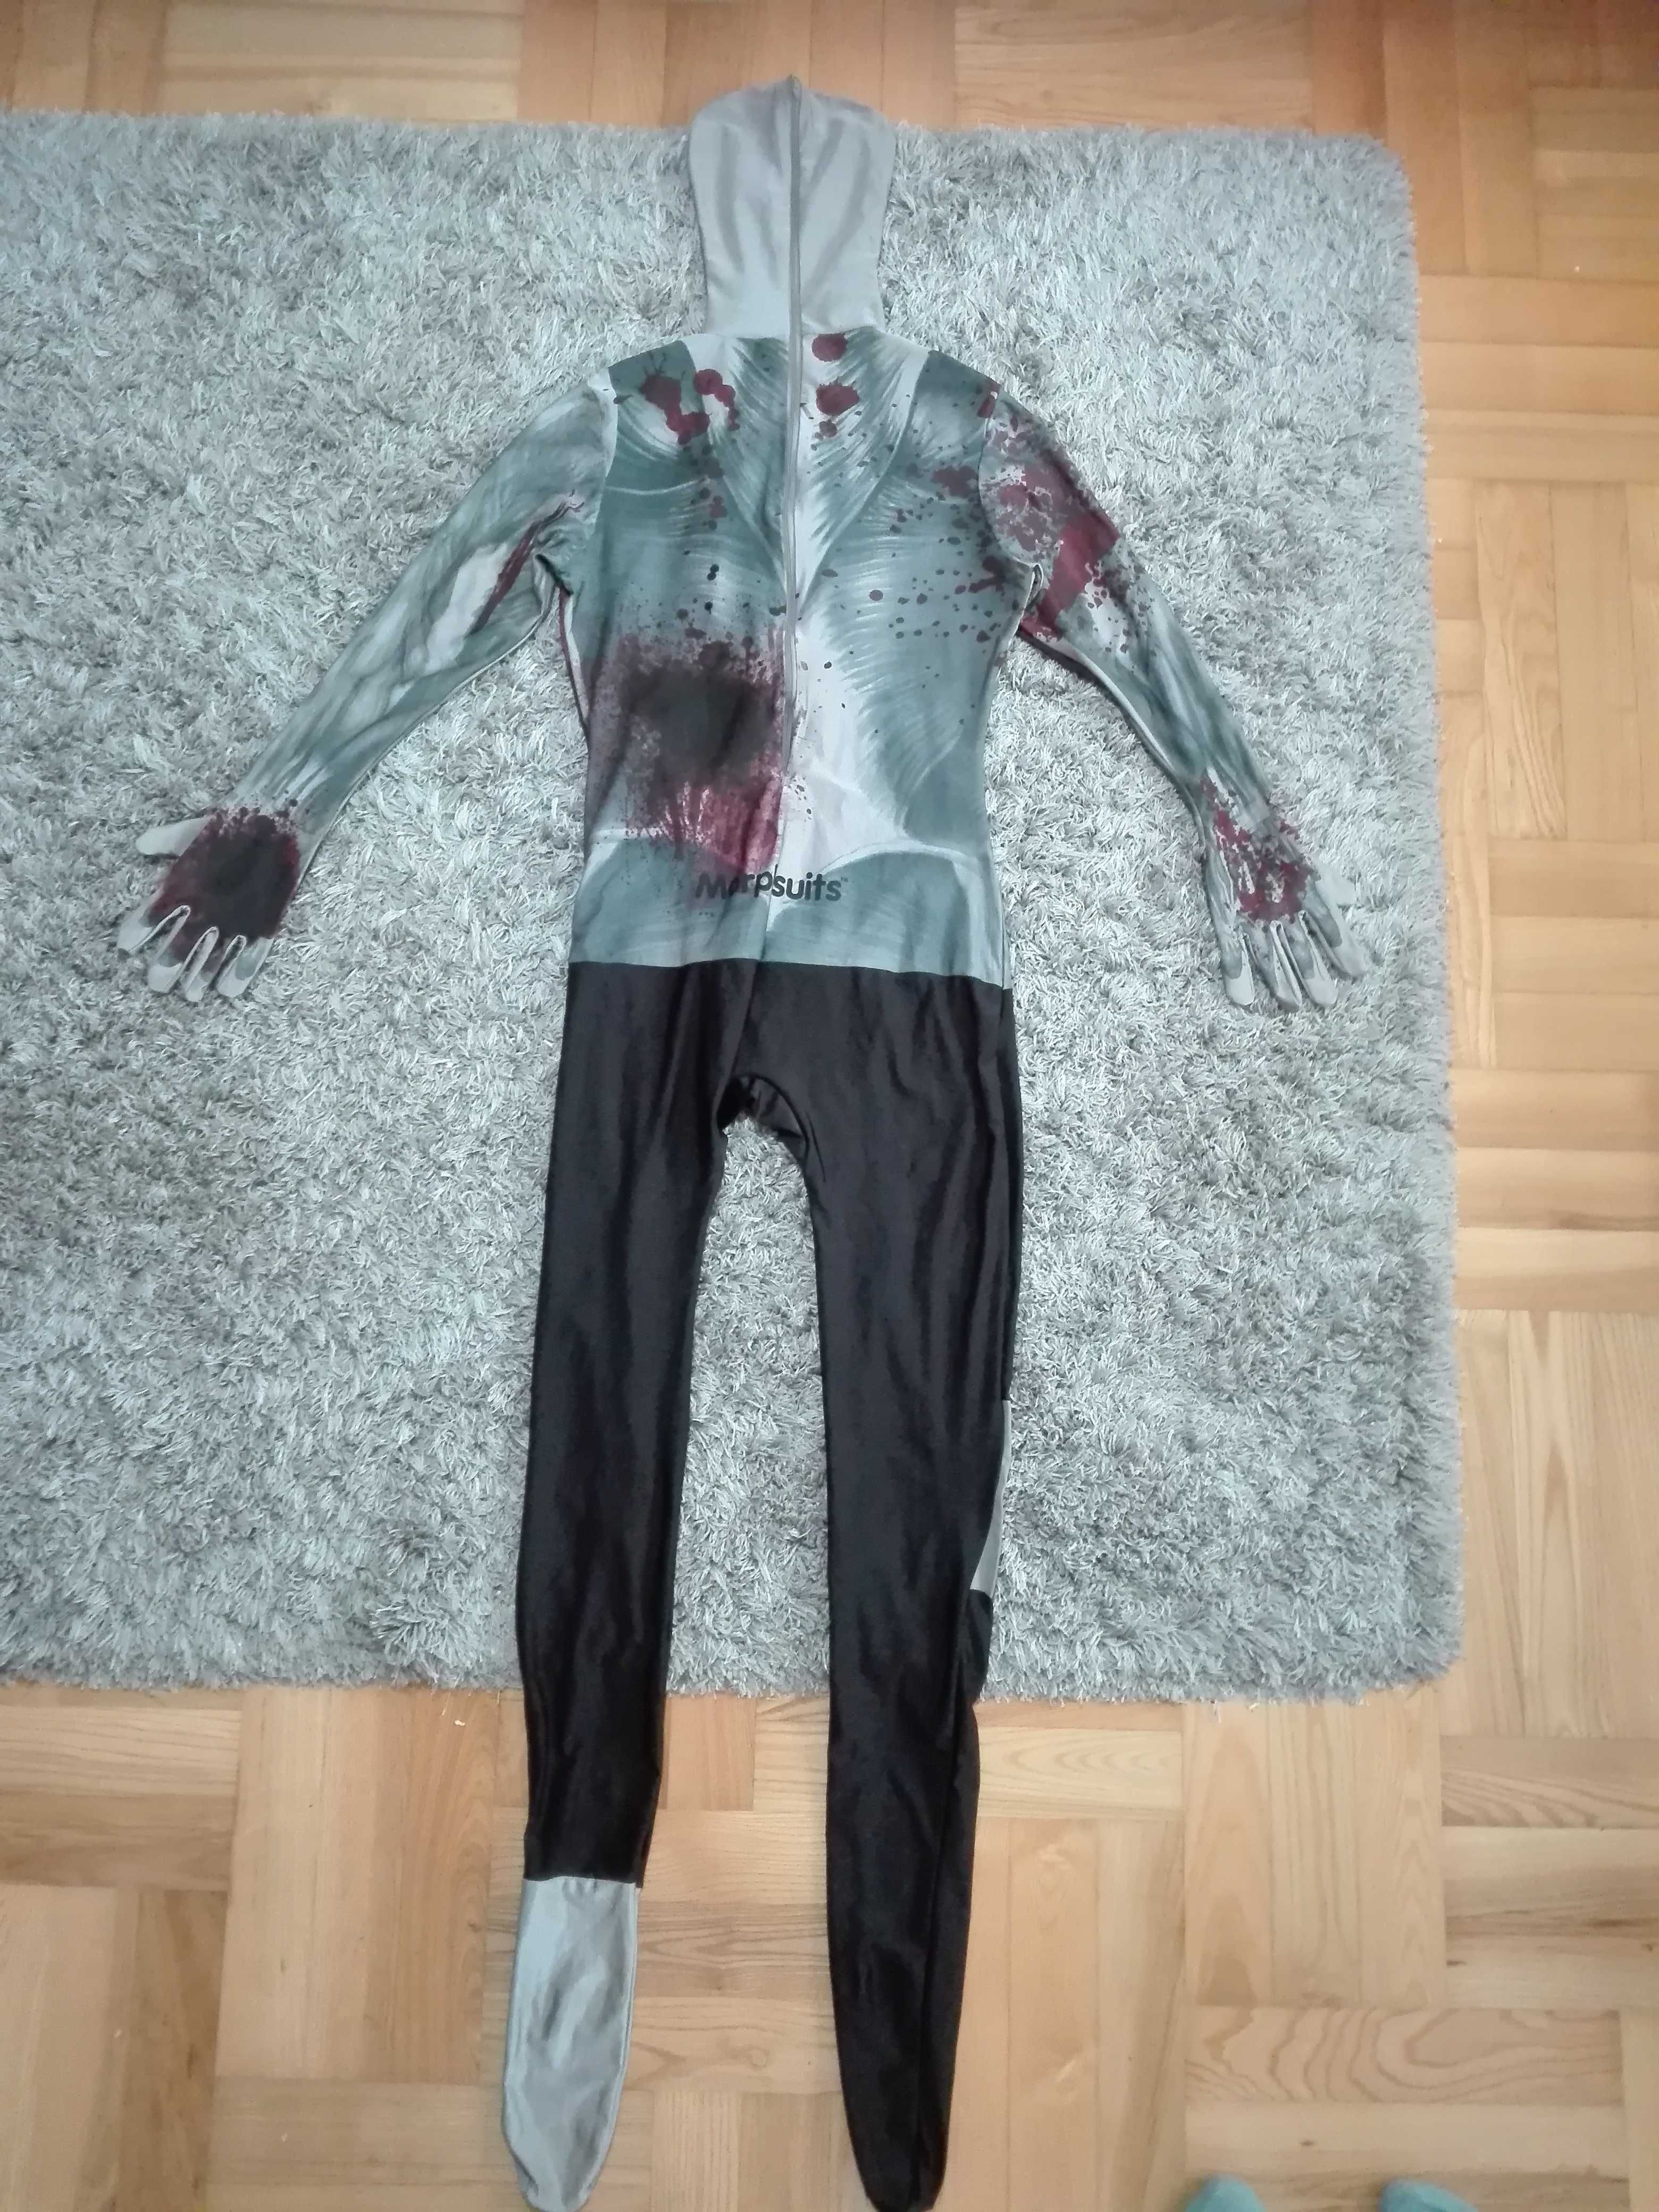 kostium zombie, śmierć, upiór, L/XL, 164-170, karnawał, przebranie